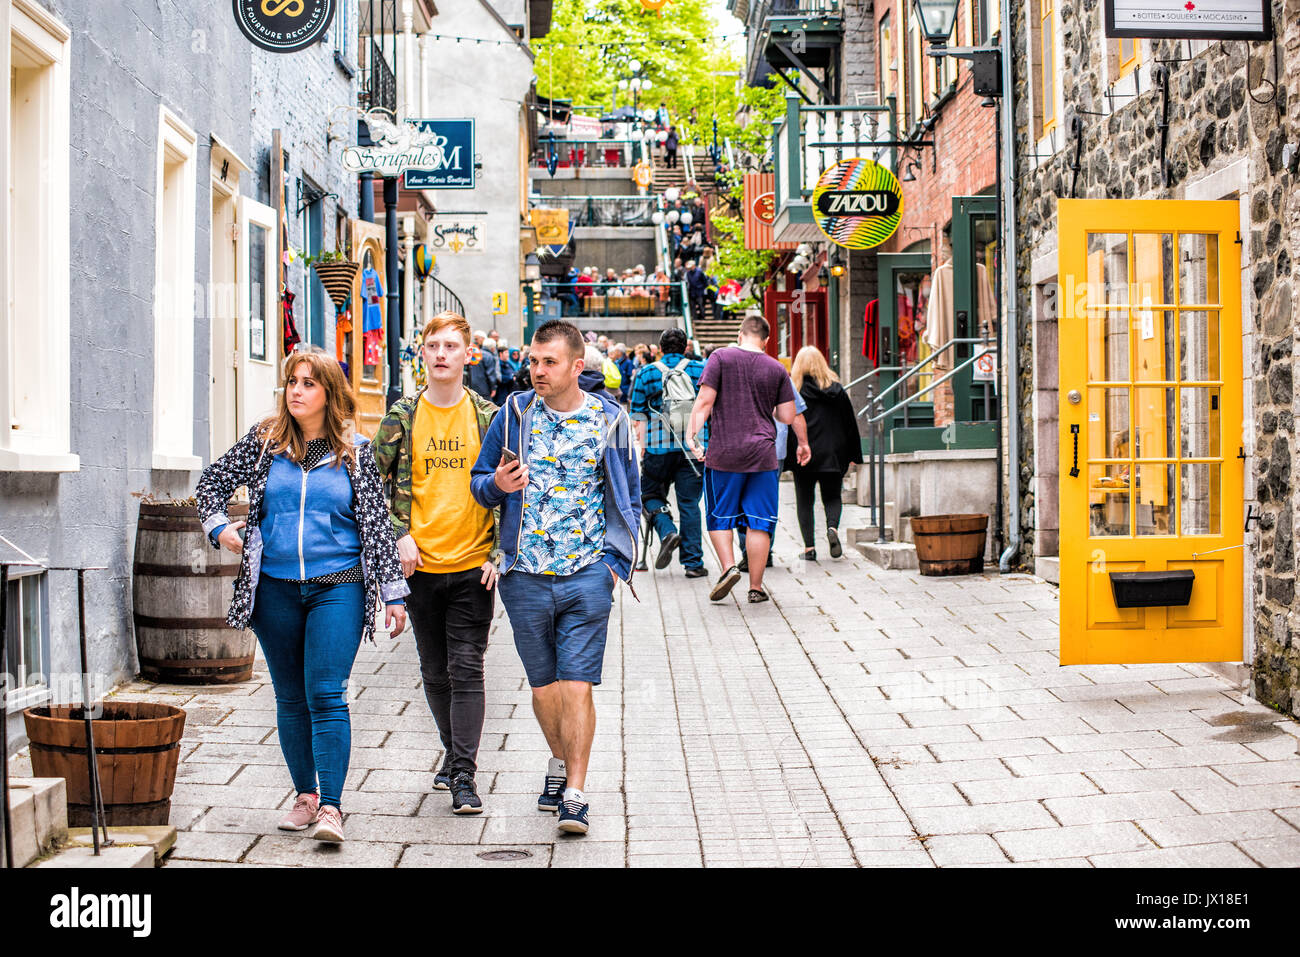 La città di Quebec, Canada - 30 Maggio 2017: Inferiore città vecchia strada chiamata Rue du Petit Champlain con famiglia turistica la gente camminare Foto Stock